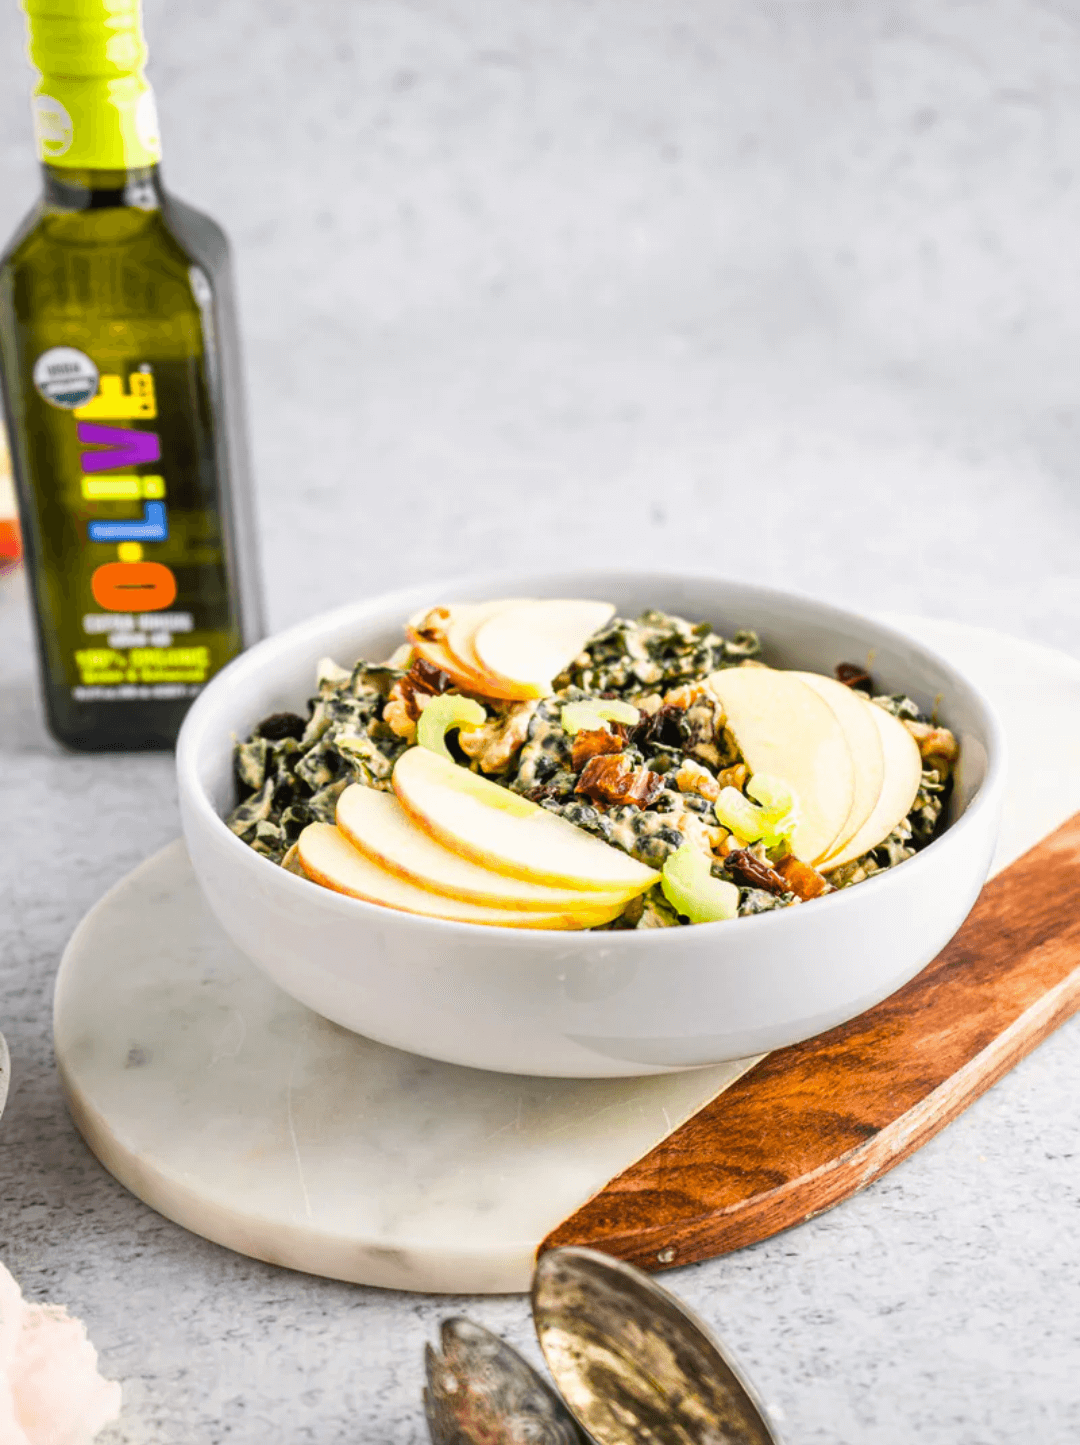 Kale Waldorf Salad acompañado de una botella de aceite de oliva O-Live & Co